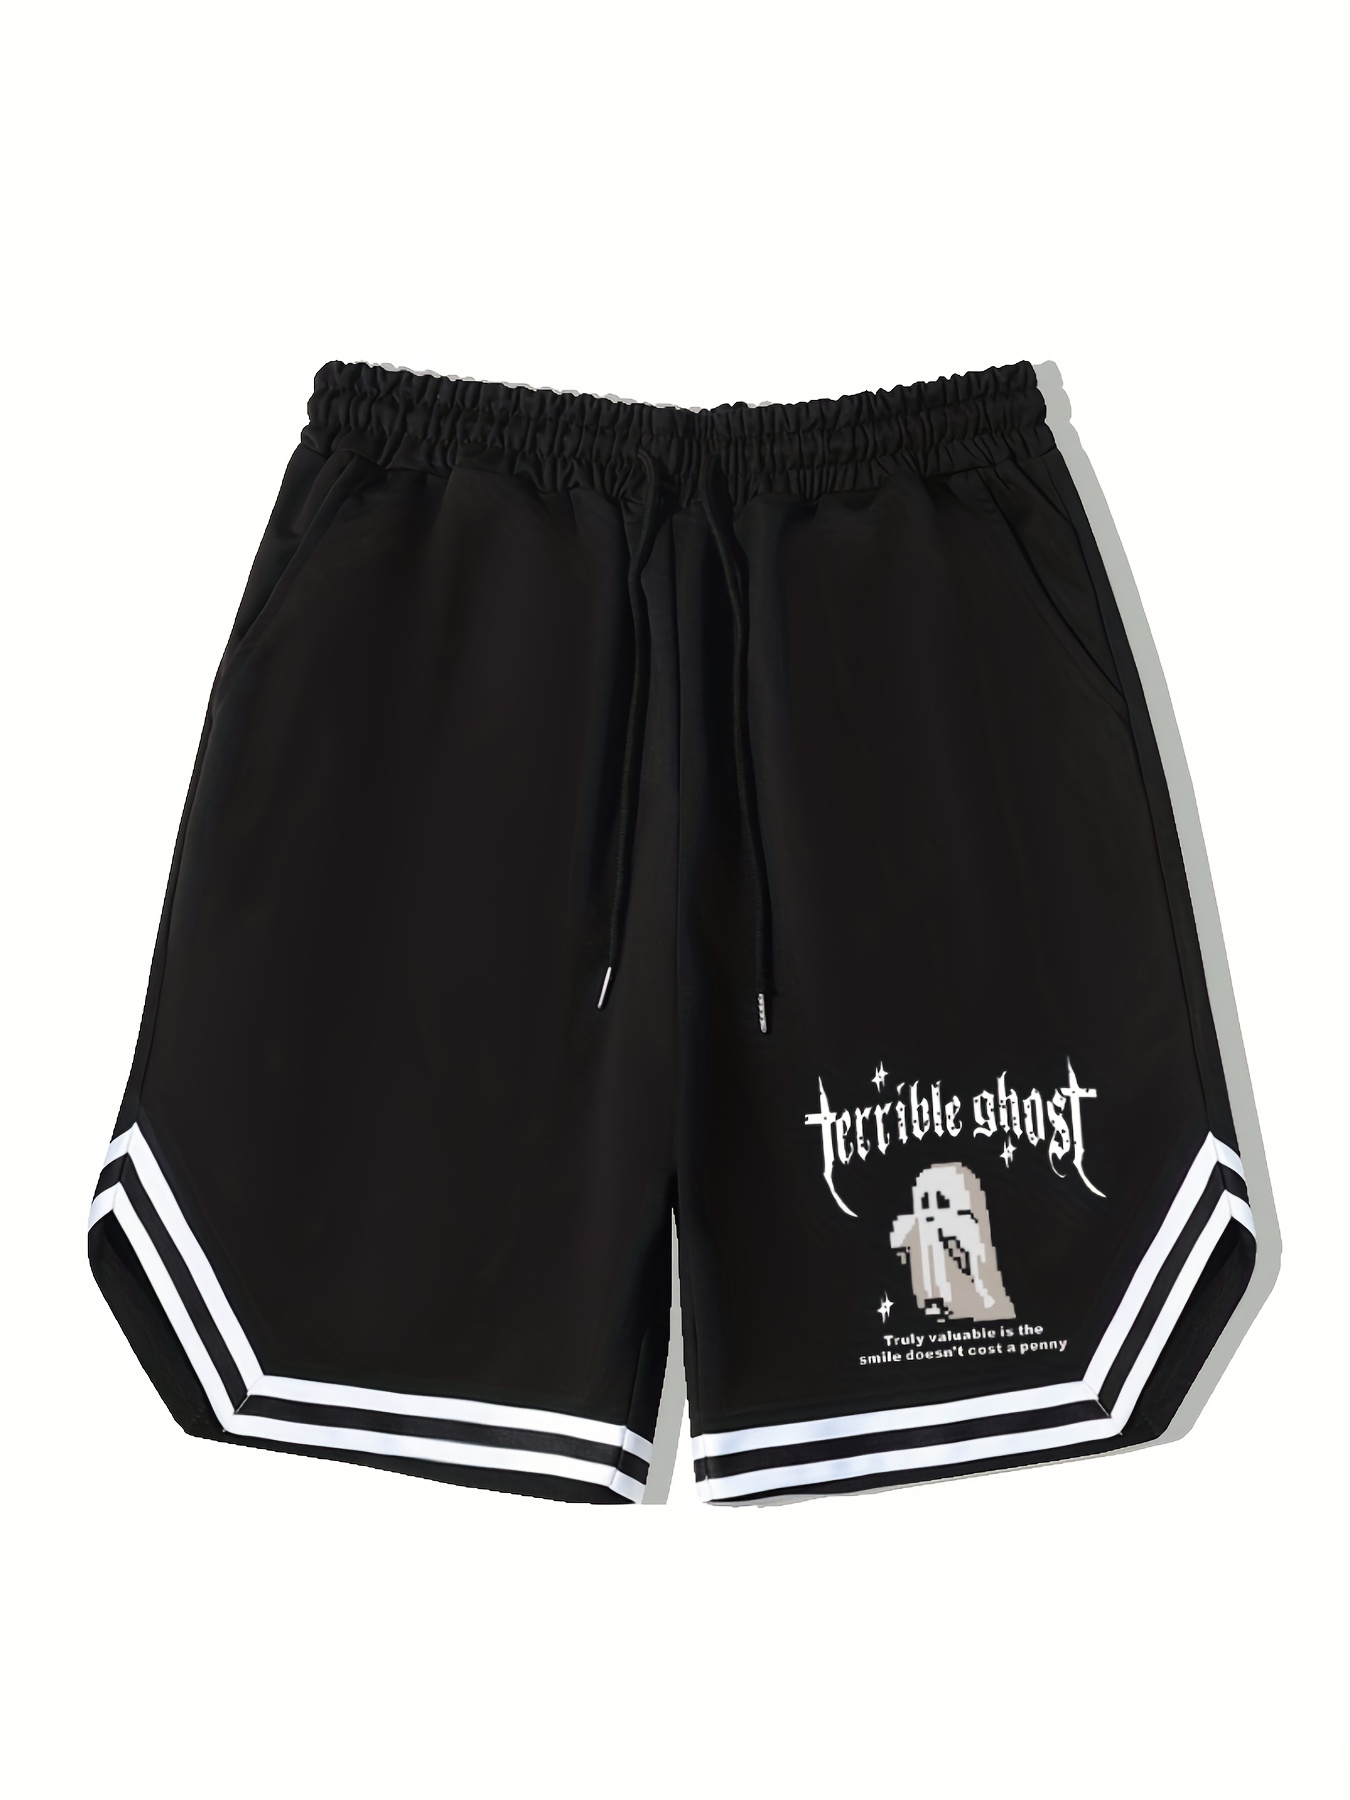 Shorts de basquete masculinos Cute Bunny Bone Graphic, shorts casuais com  cordão levemente elástico para treino ao ar livre, roupas masculinas para o  verão - Temu Portugal